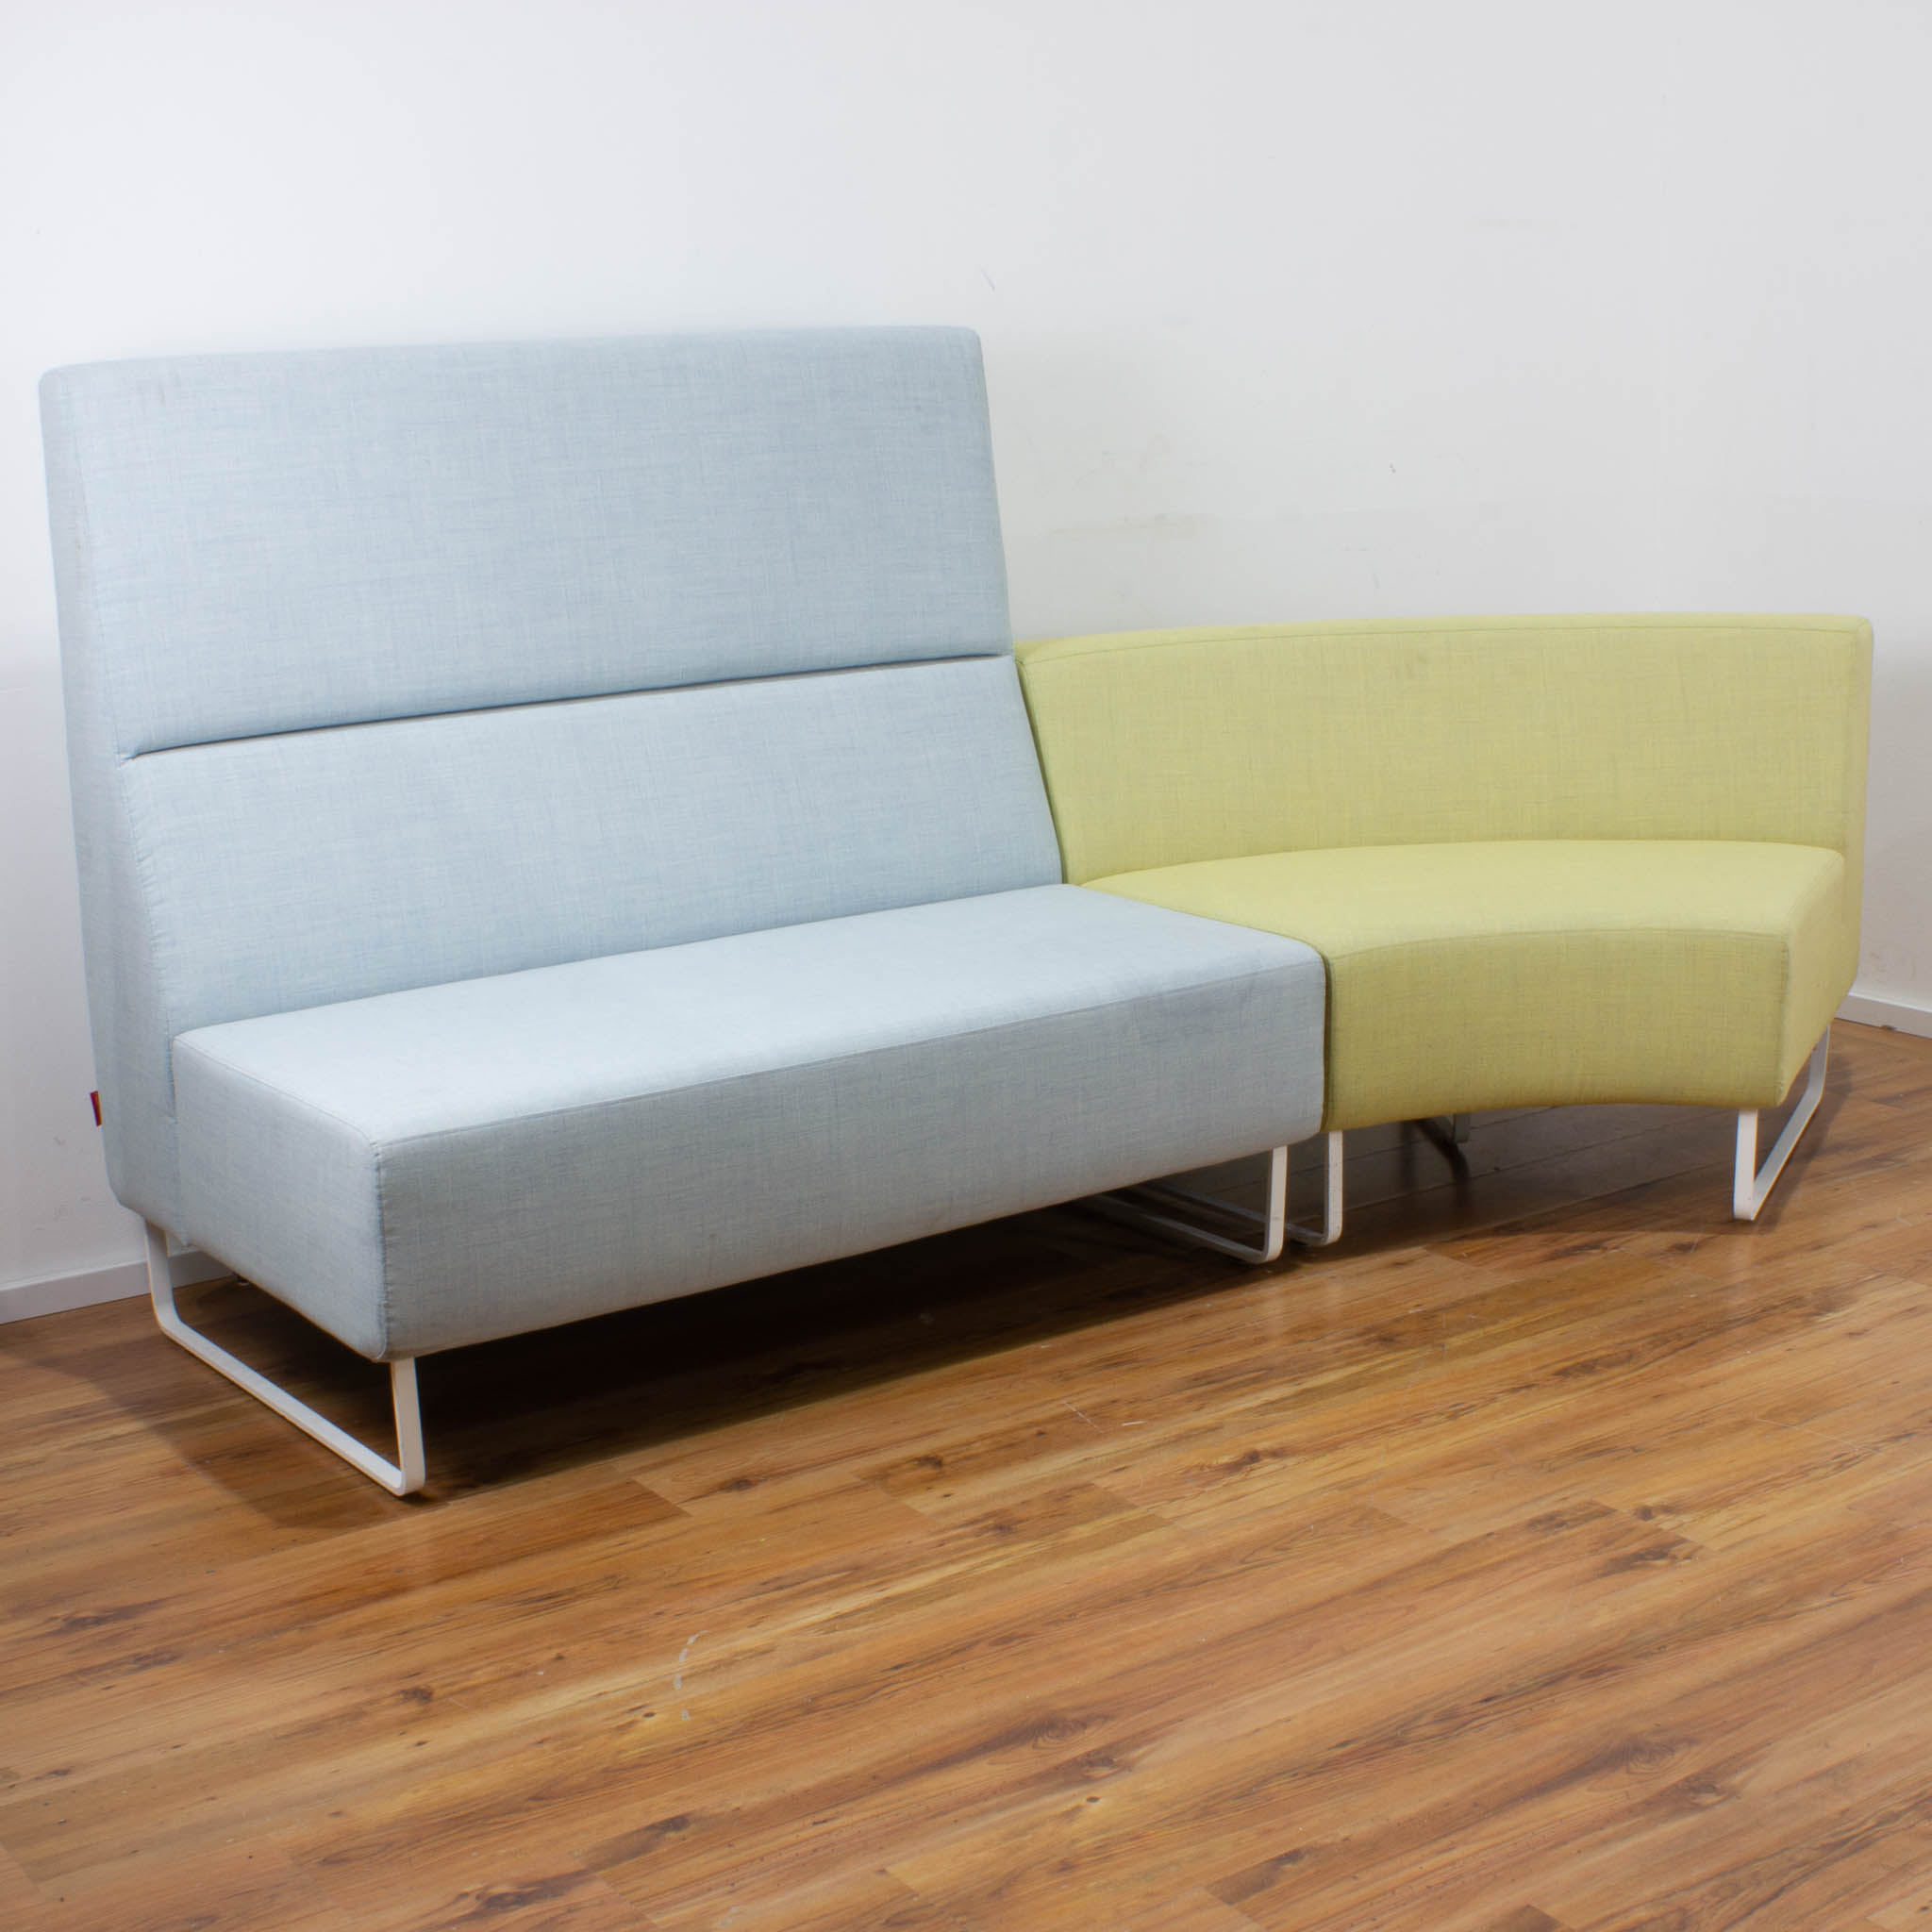 Haworth Lounge Sofa blau und gelb - 2-teilig - einzeln stellbar 